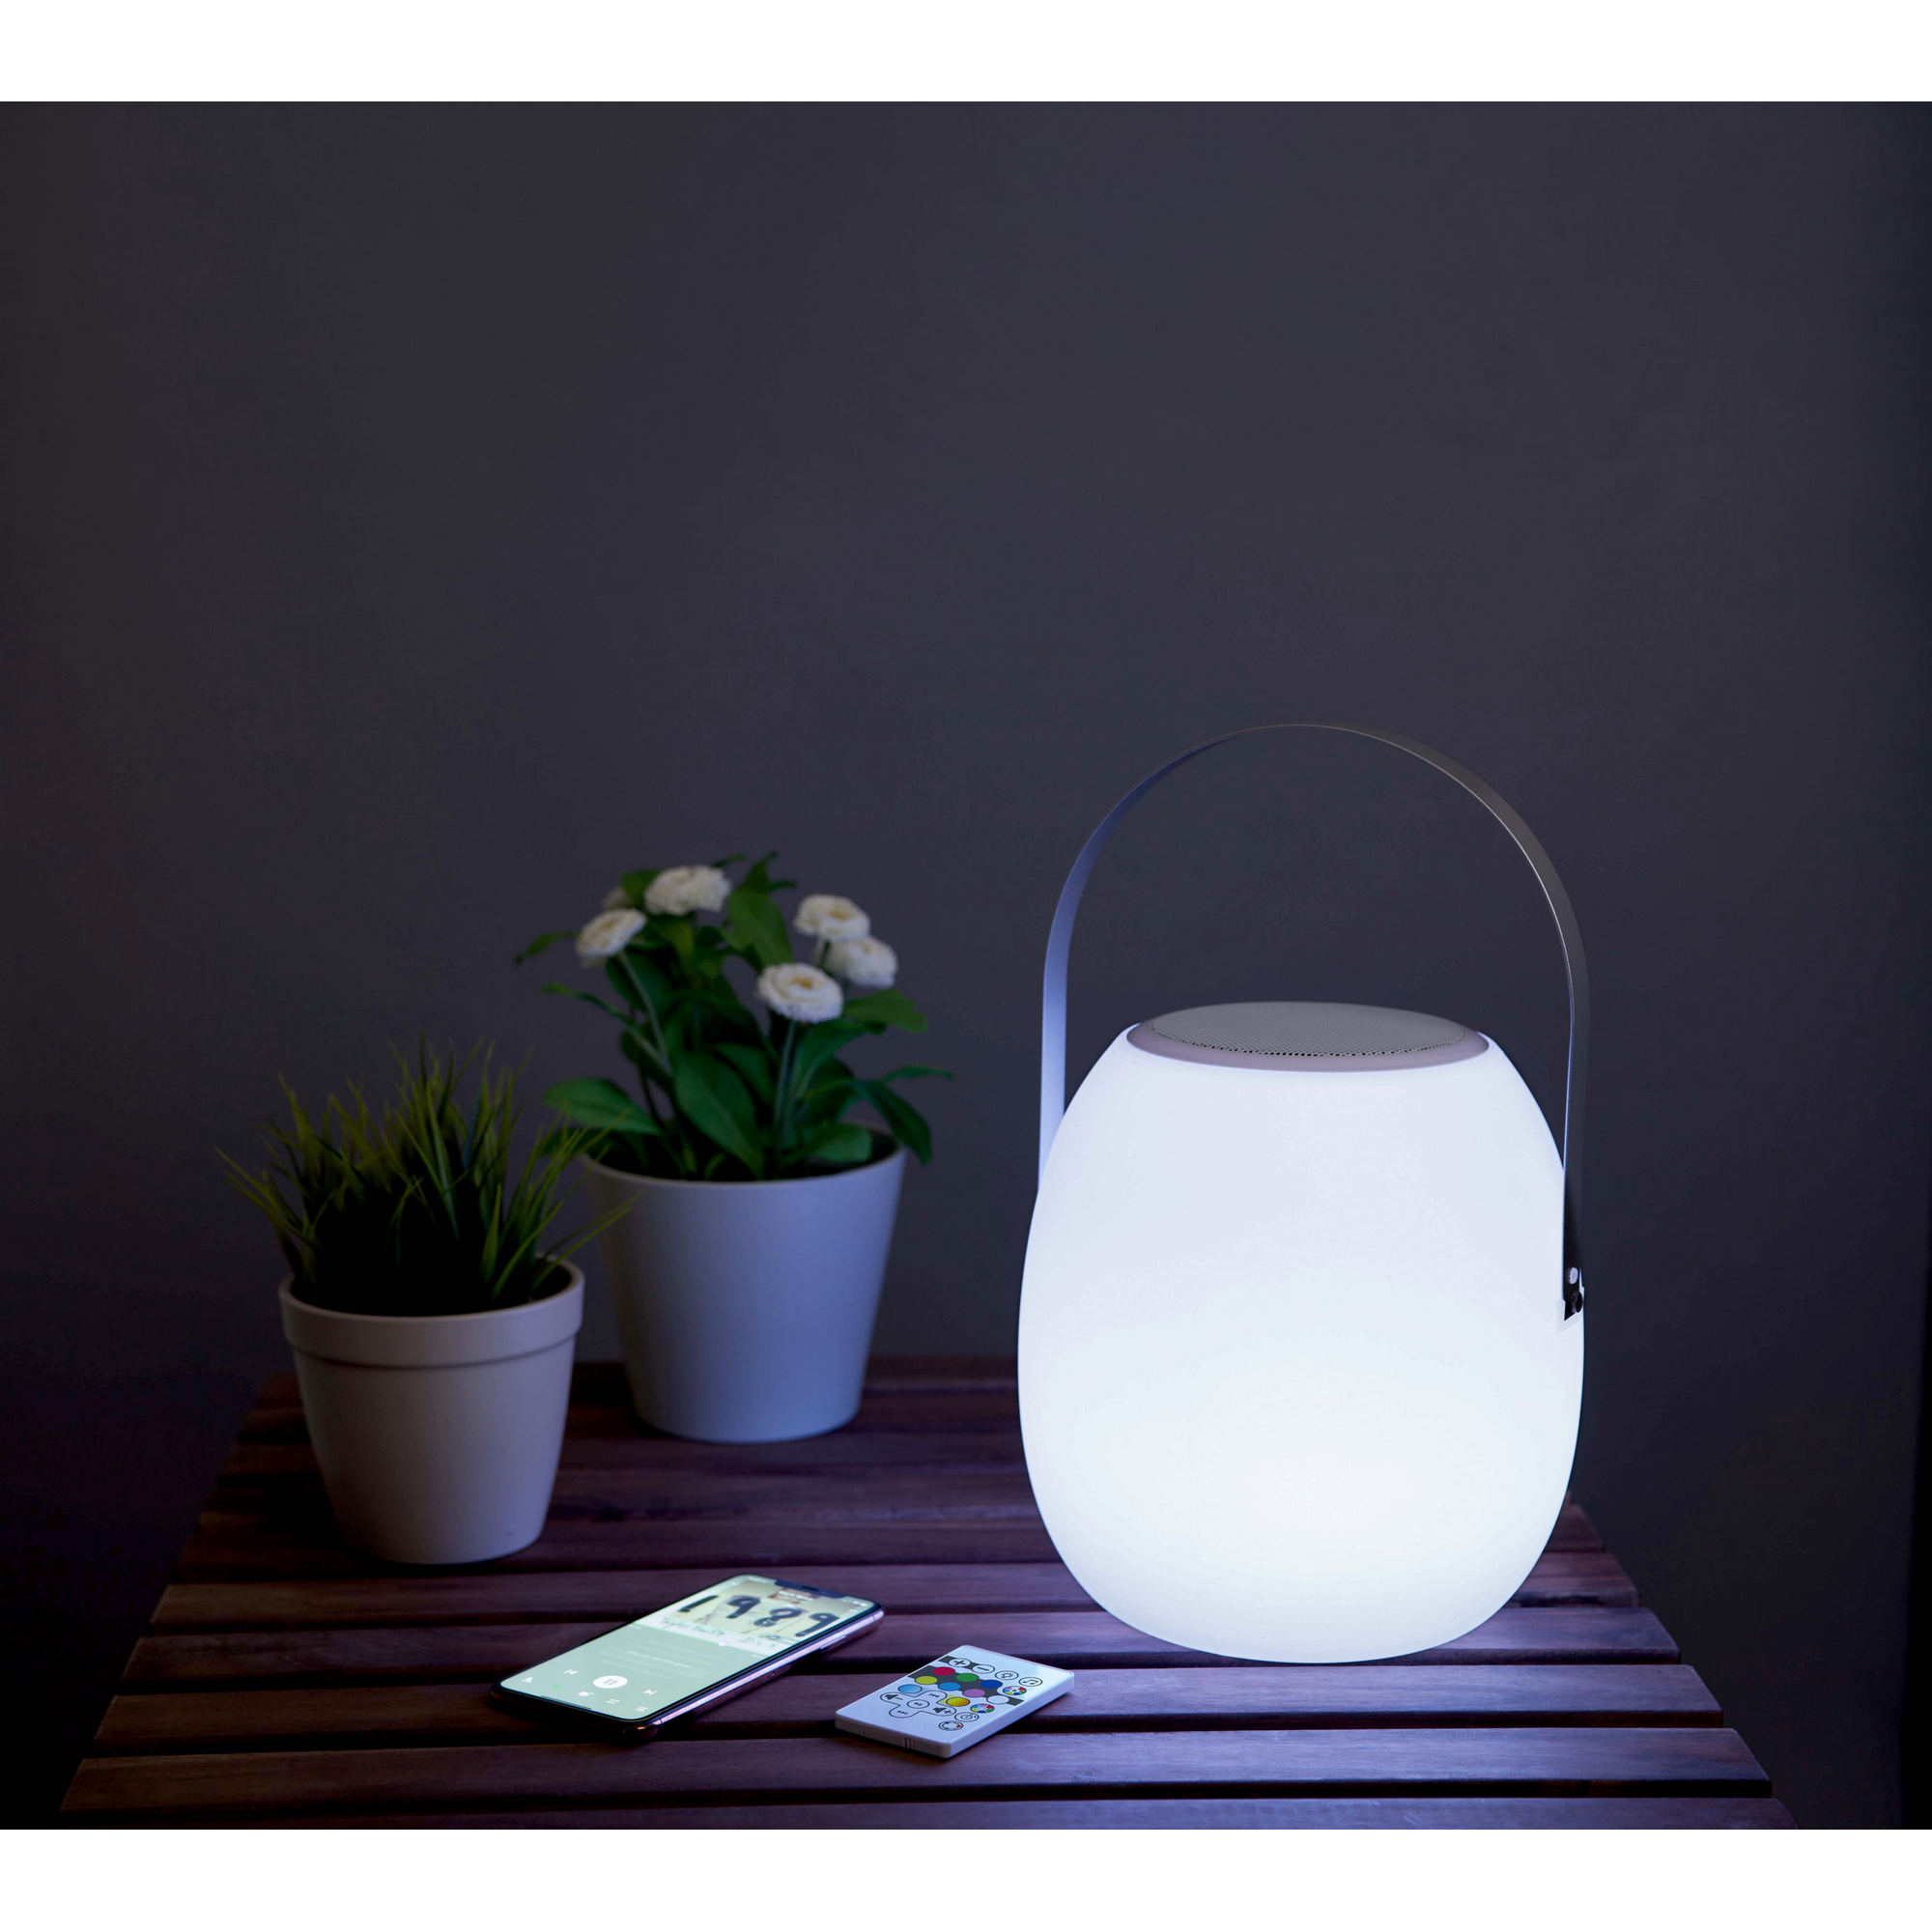 LED-Außenleuchte mit Lautsprecher + product picture